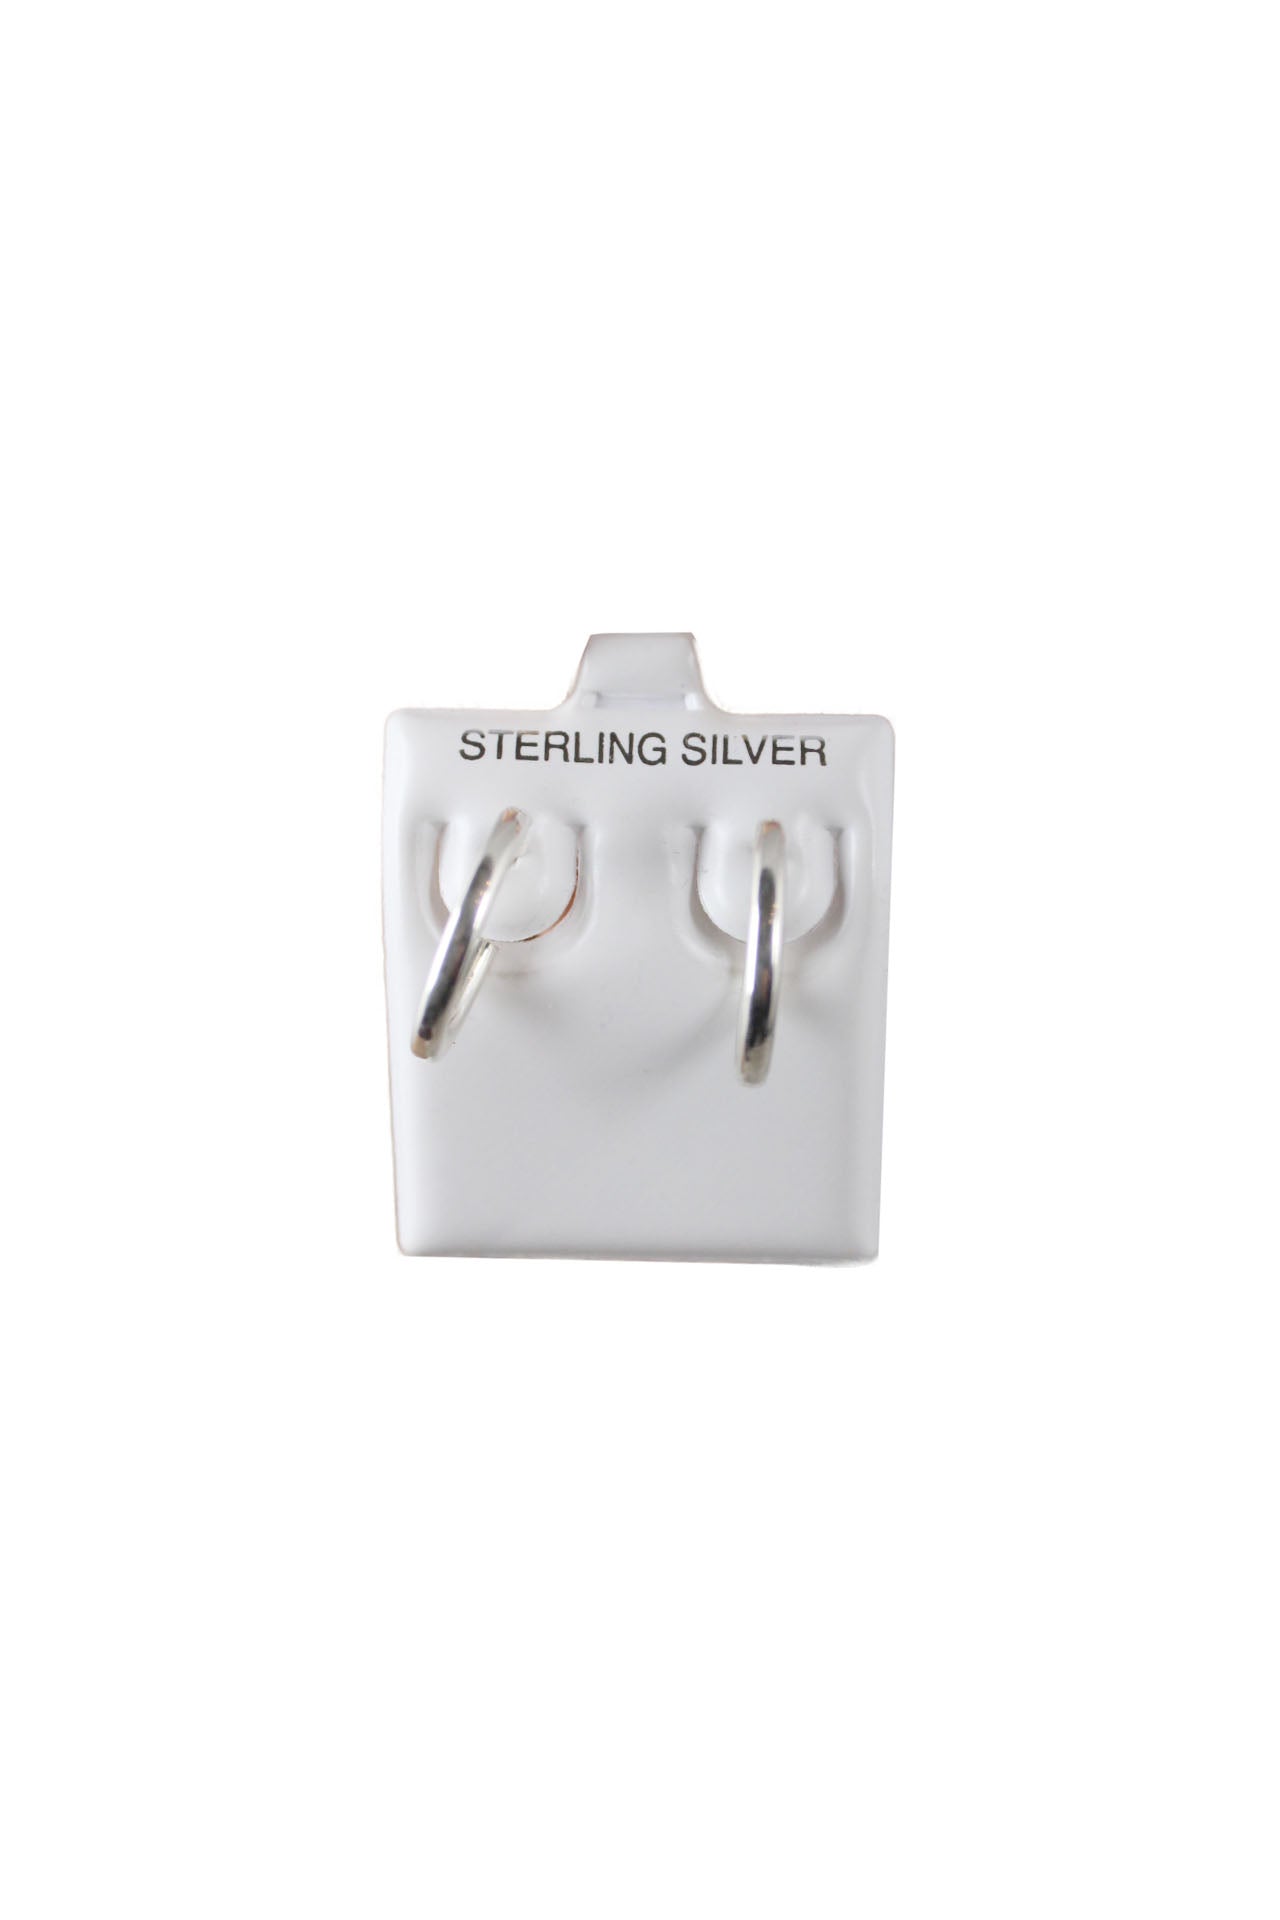 description: unlabeled sterling silver hoop earrings. features huggie closure.